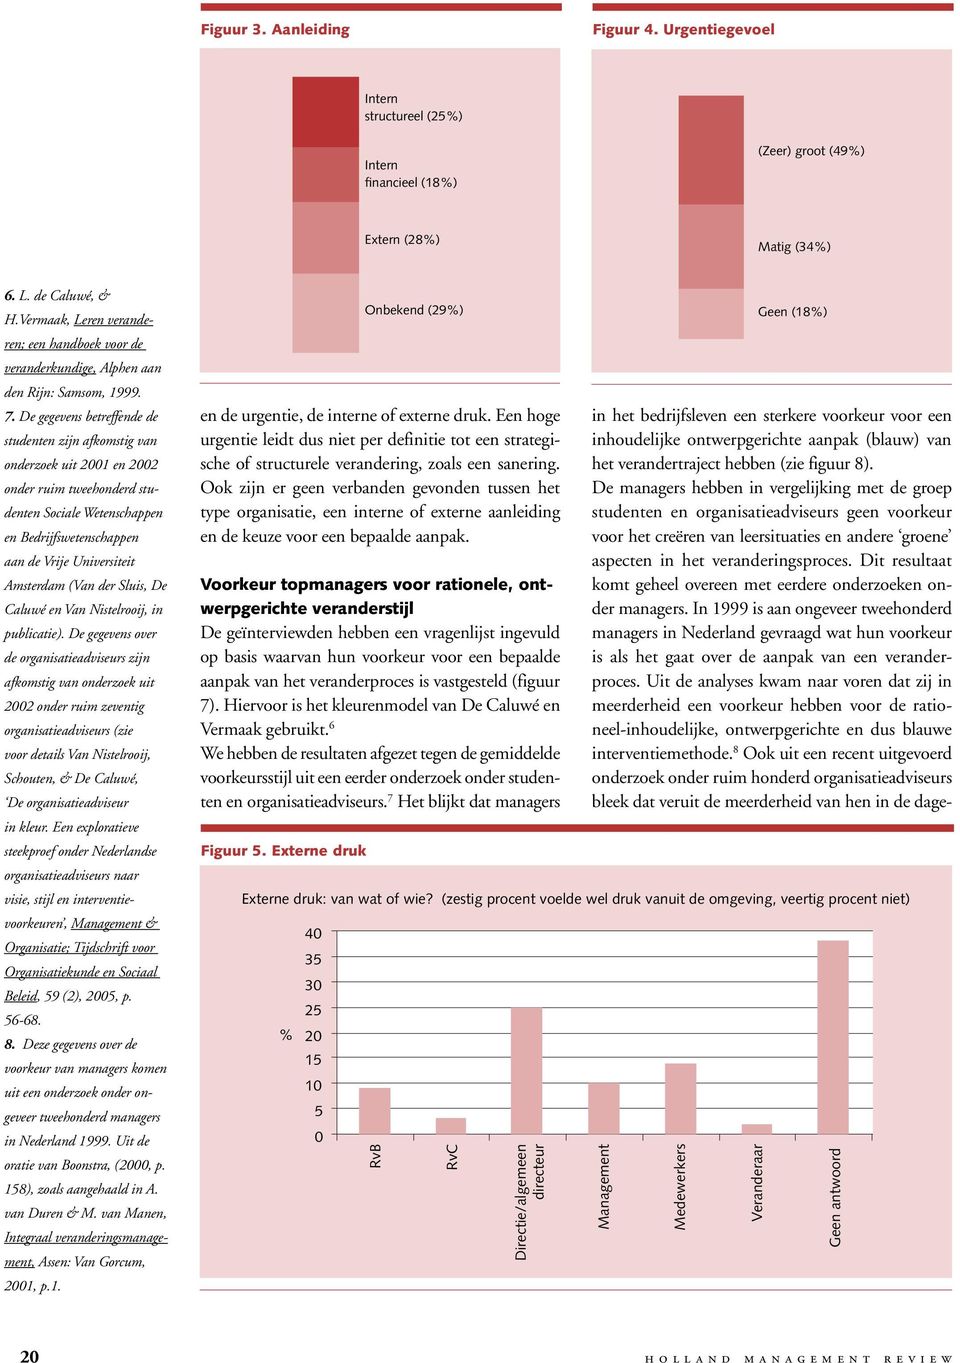 De gegevens betreffende de studenten zijn afkomstig van onderzoek uit 2001 en 2002 onder ruim tweehonderd studenten Sociale Wetenschappen en Bedrijfswetenschappen aan de Vrije Universiteit Amsterdam